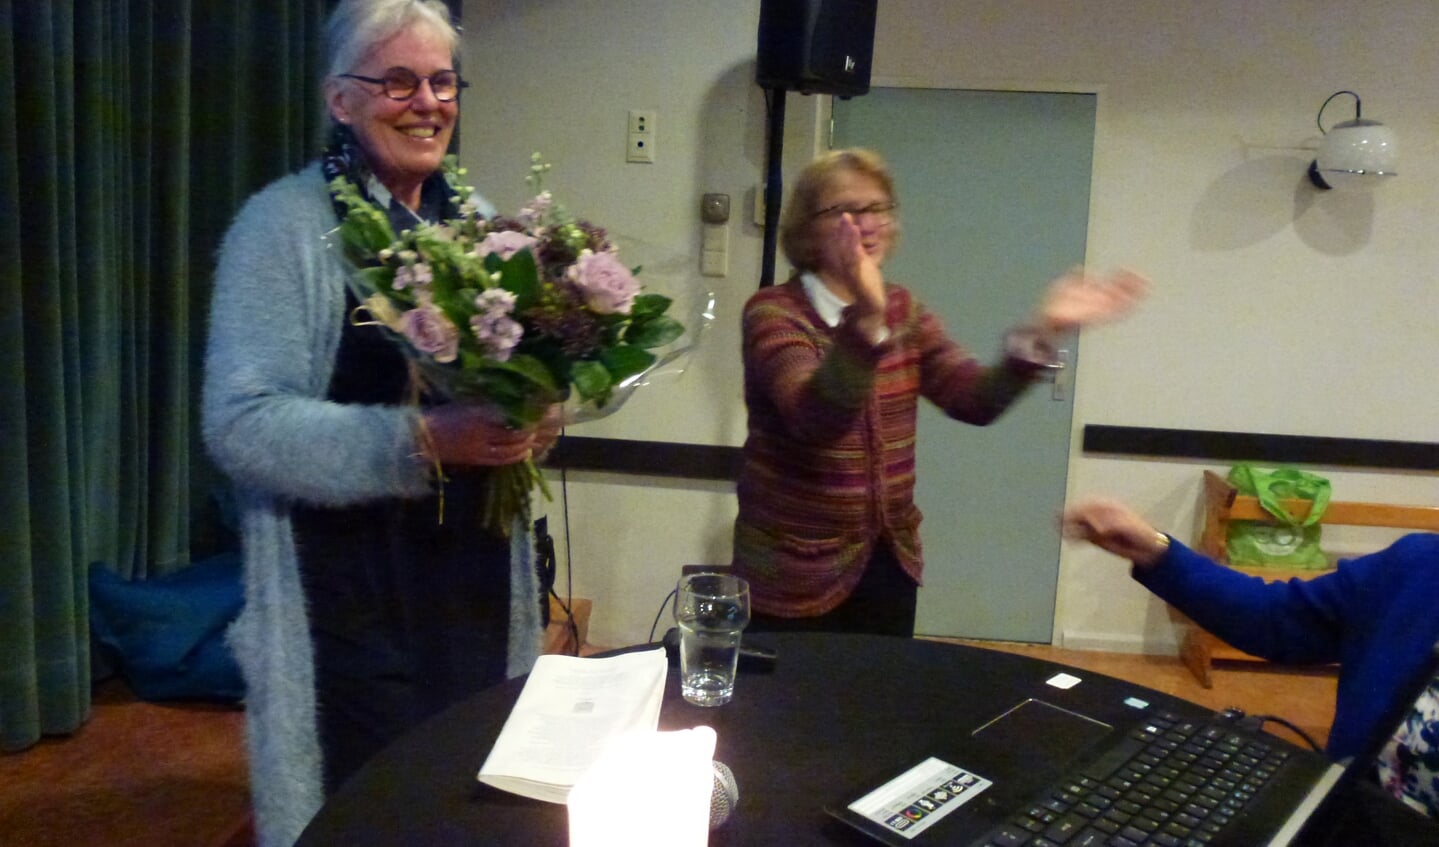 Mevr. Joke Kraal krijgt bloemen van voorzitter van Passage Nijkerk